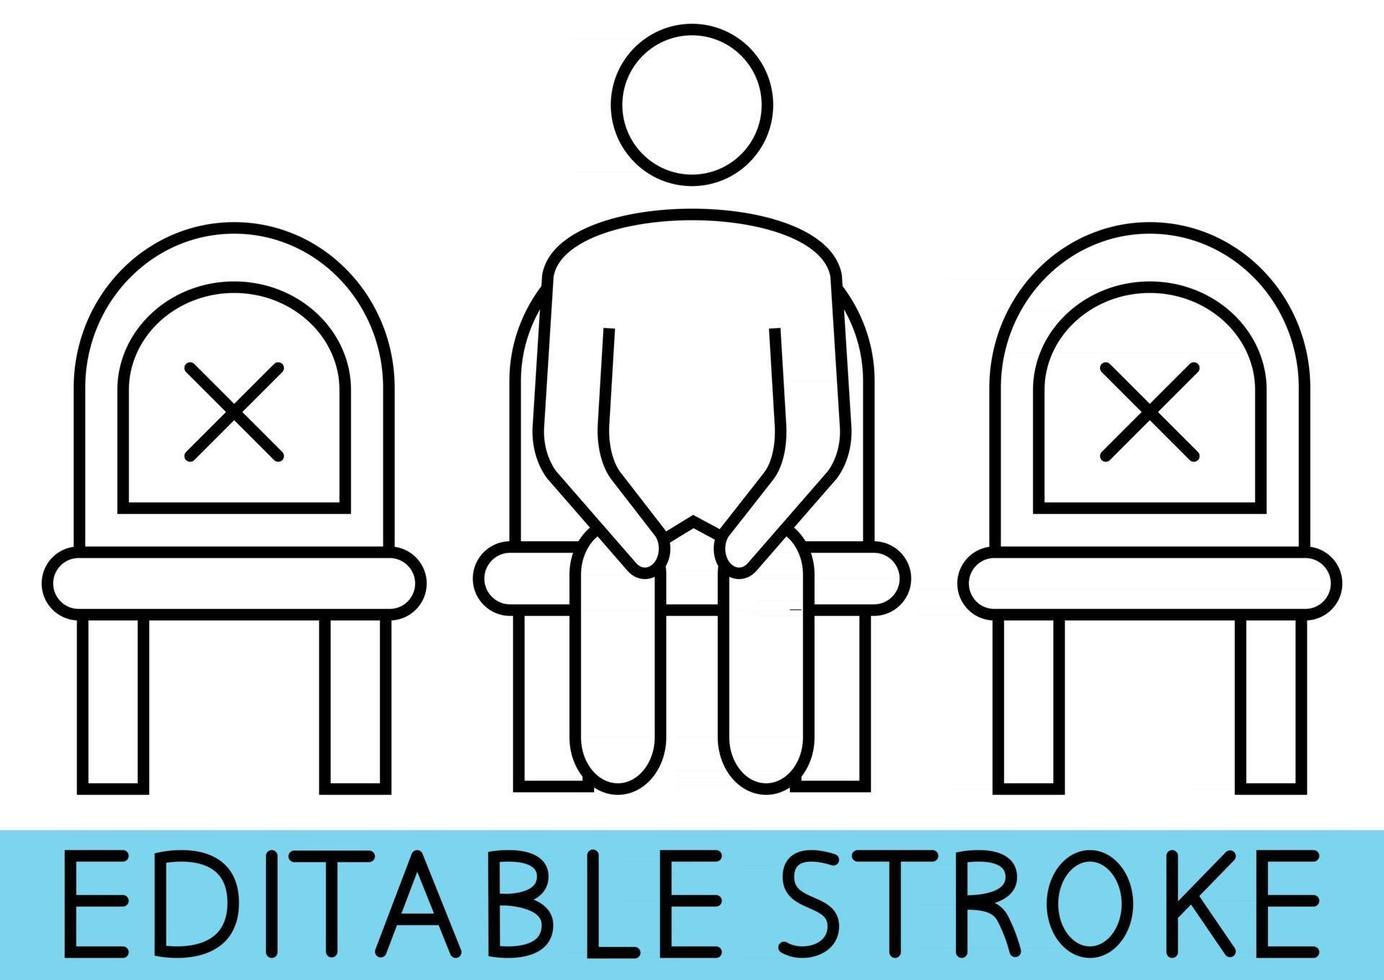 sitt inte här. skyltar för restauranger och offentliga platser eller transport. håll avstånd när du sitter. redigerbar stroke. man på stolen. håll dig på avstånd. vektor